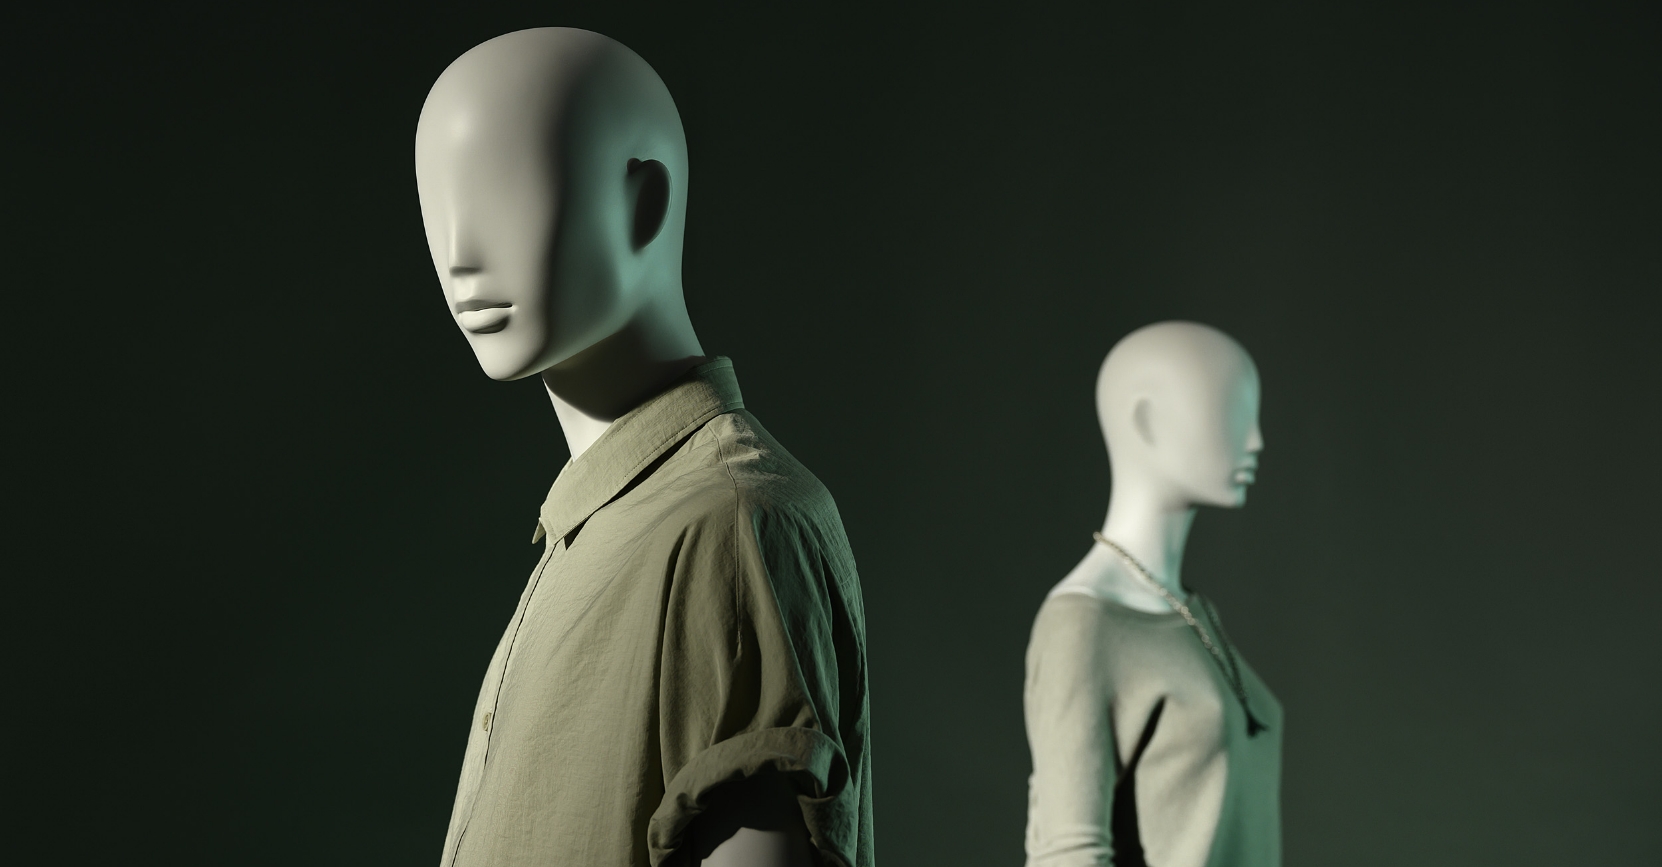 Semi abstract mannequins – Paris collection Hans Boodt Mannequins